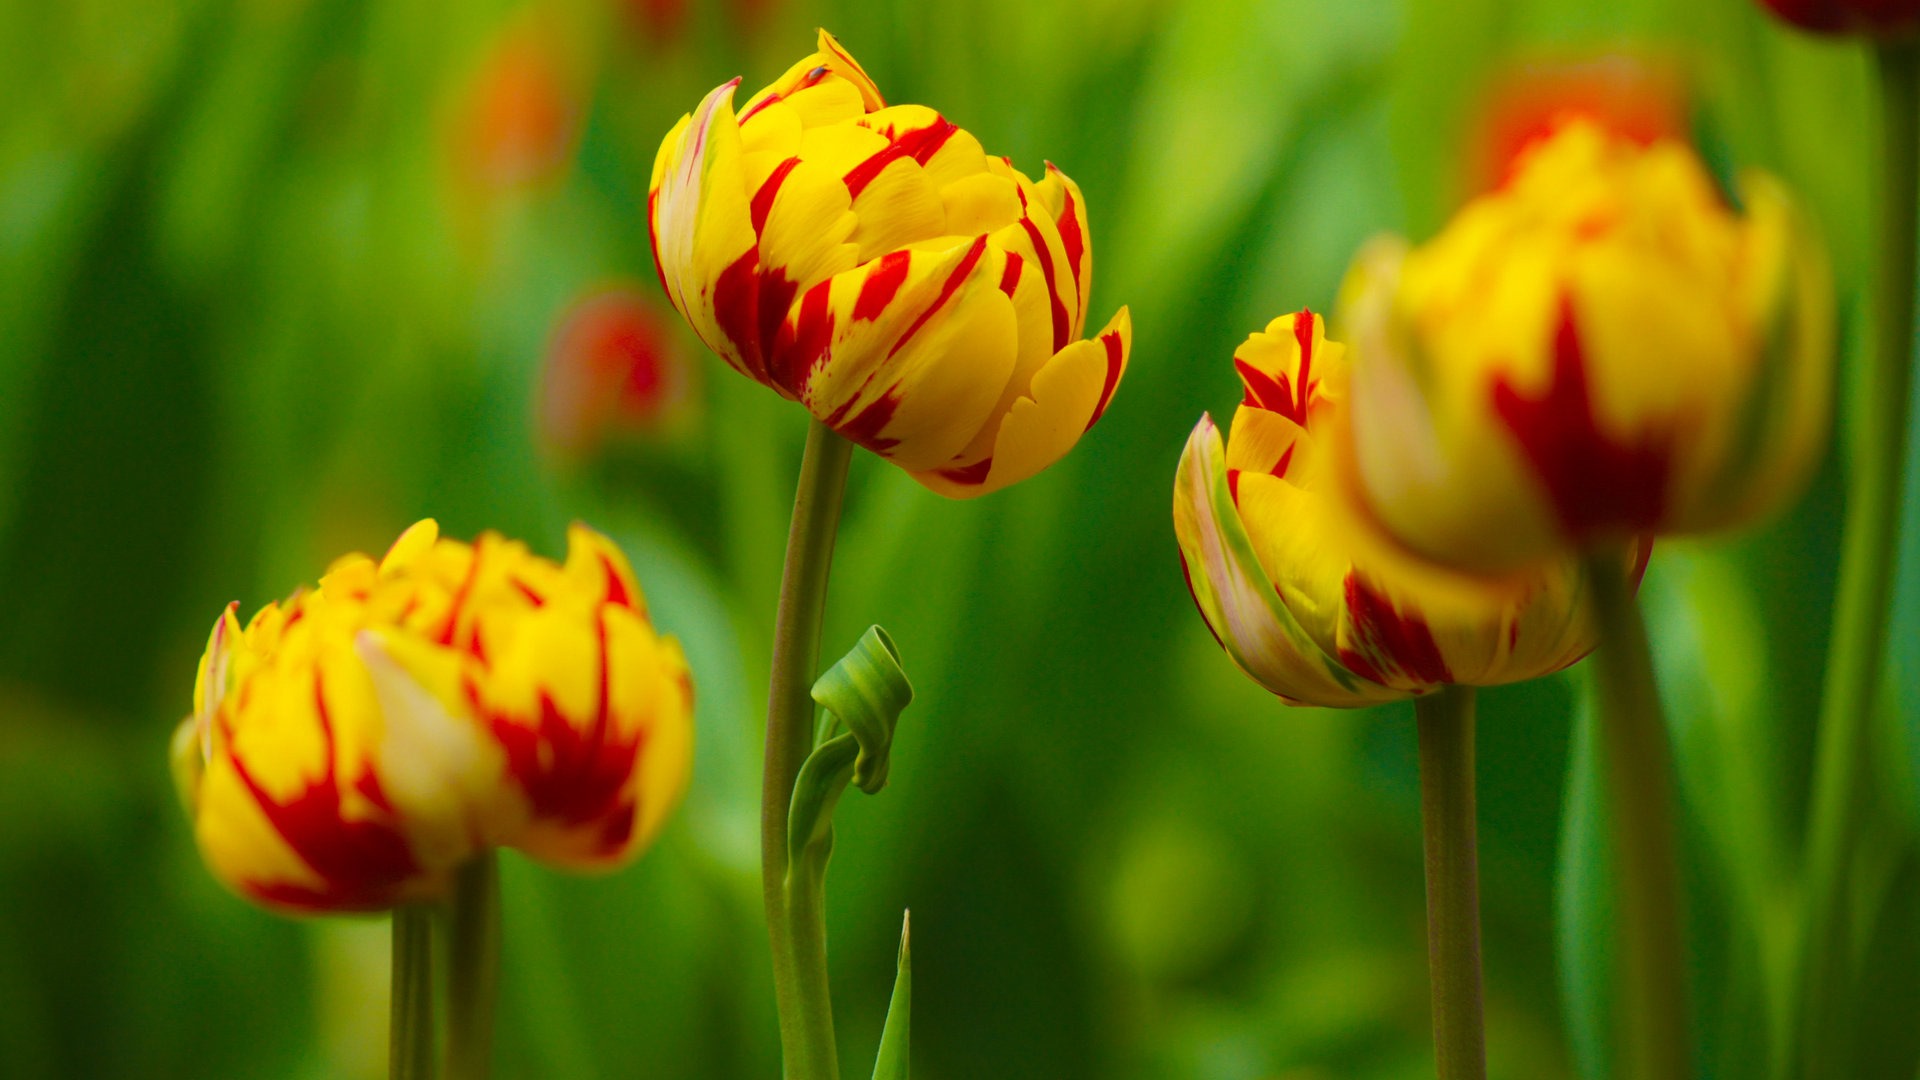 Fondos de pantalla HD de flores tulipanes frescos y coloridos #16 - 1920x1080